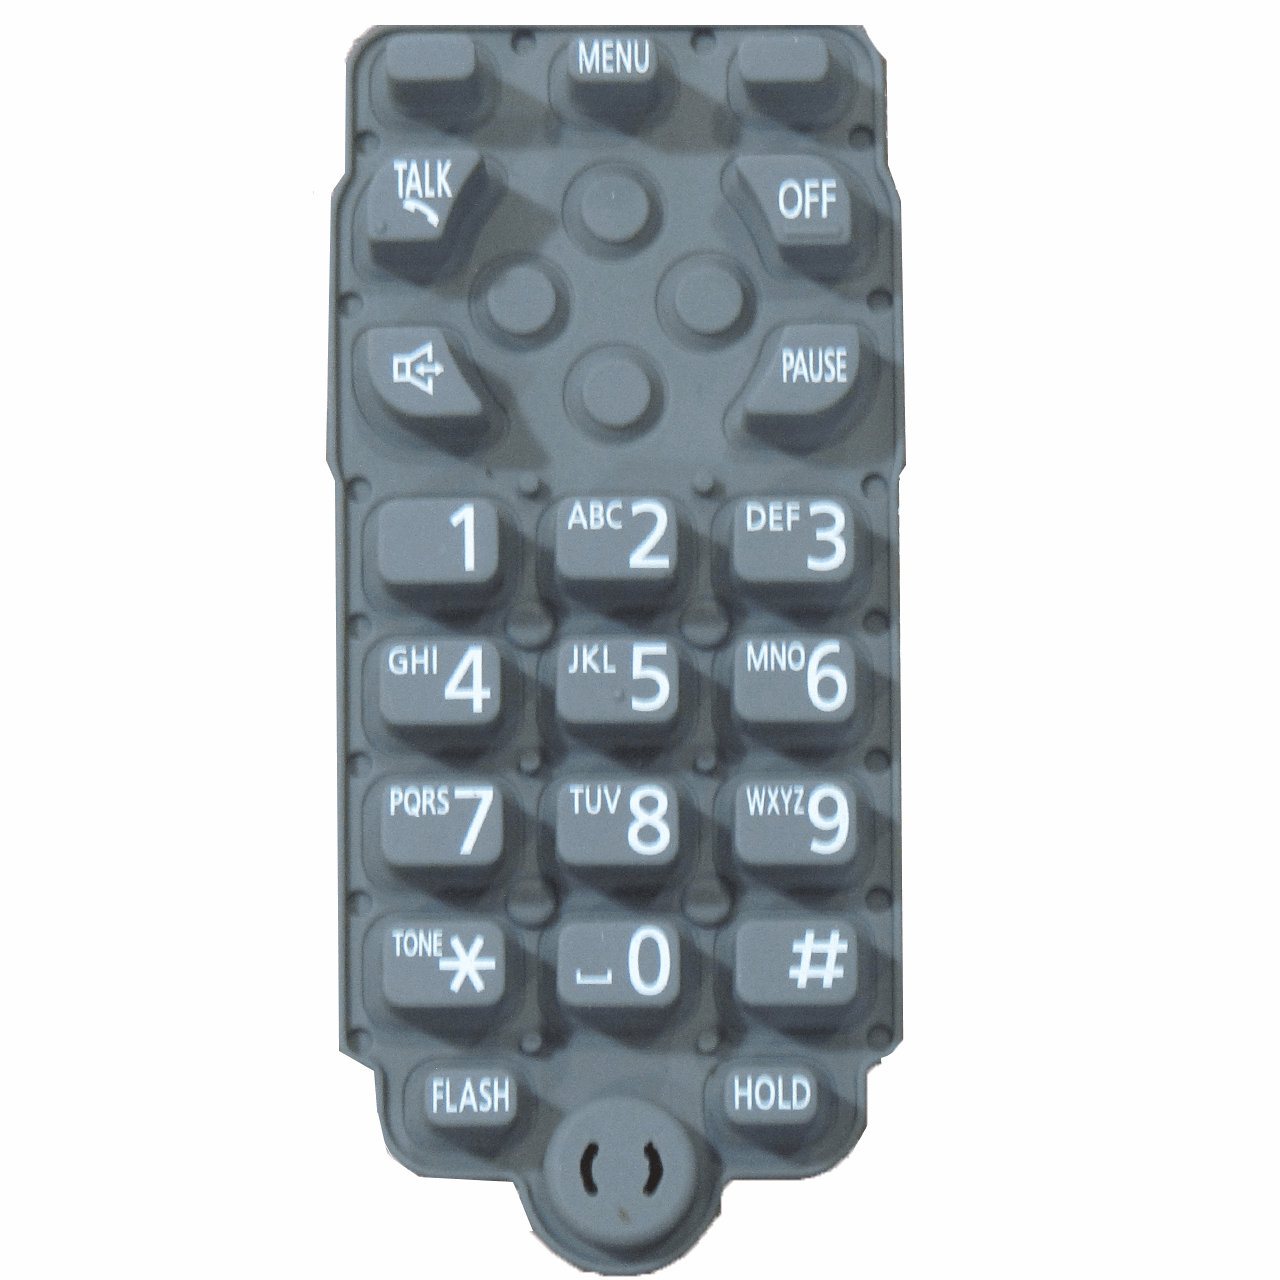 شماره گیر اس وای دی مدل 3611 مناسب تلفن پاناسونیک